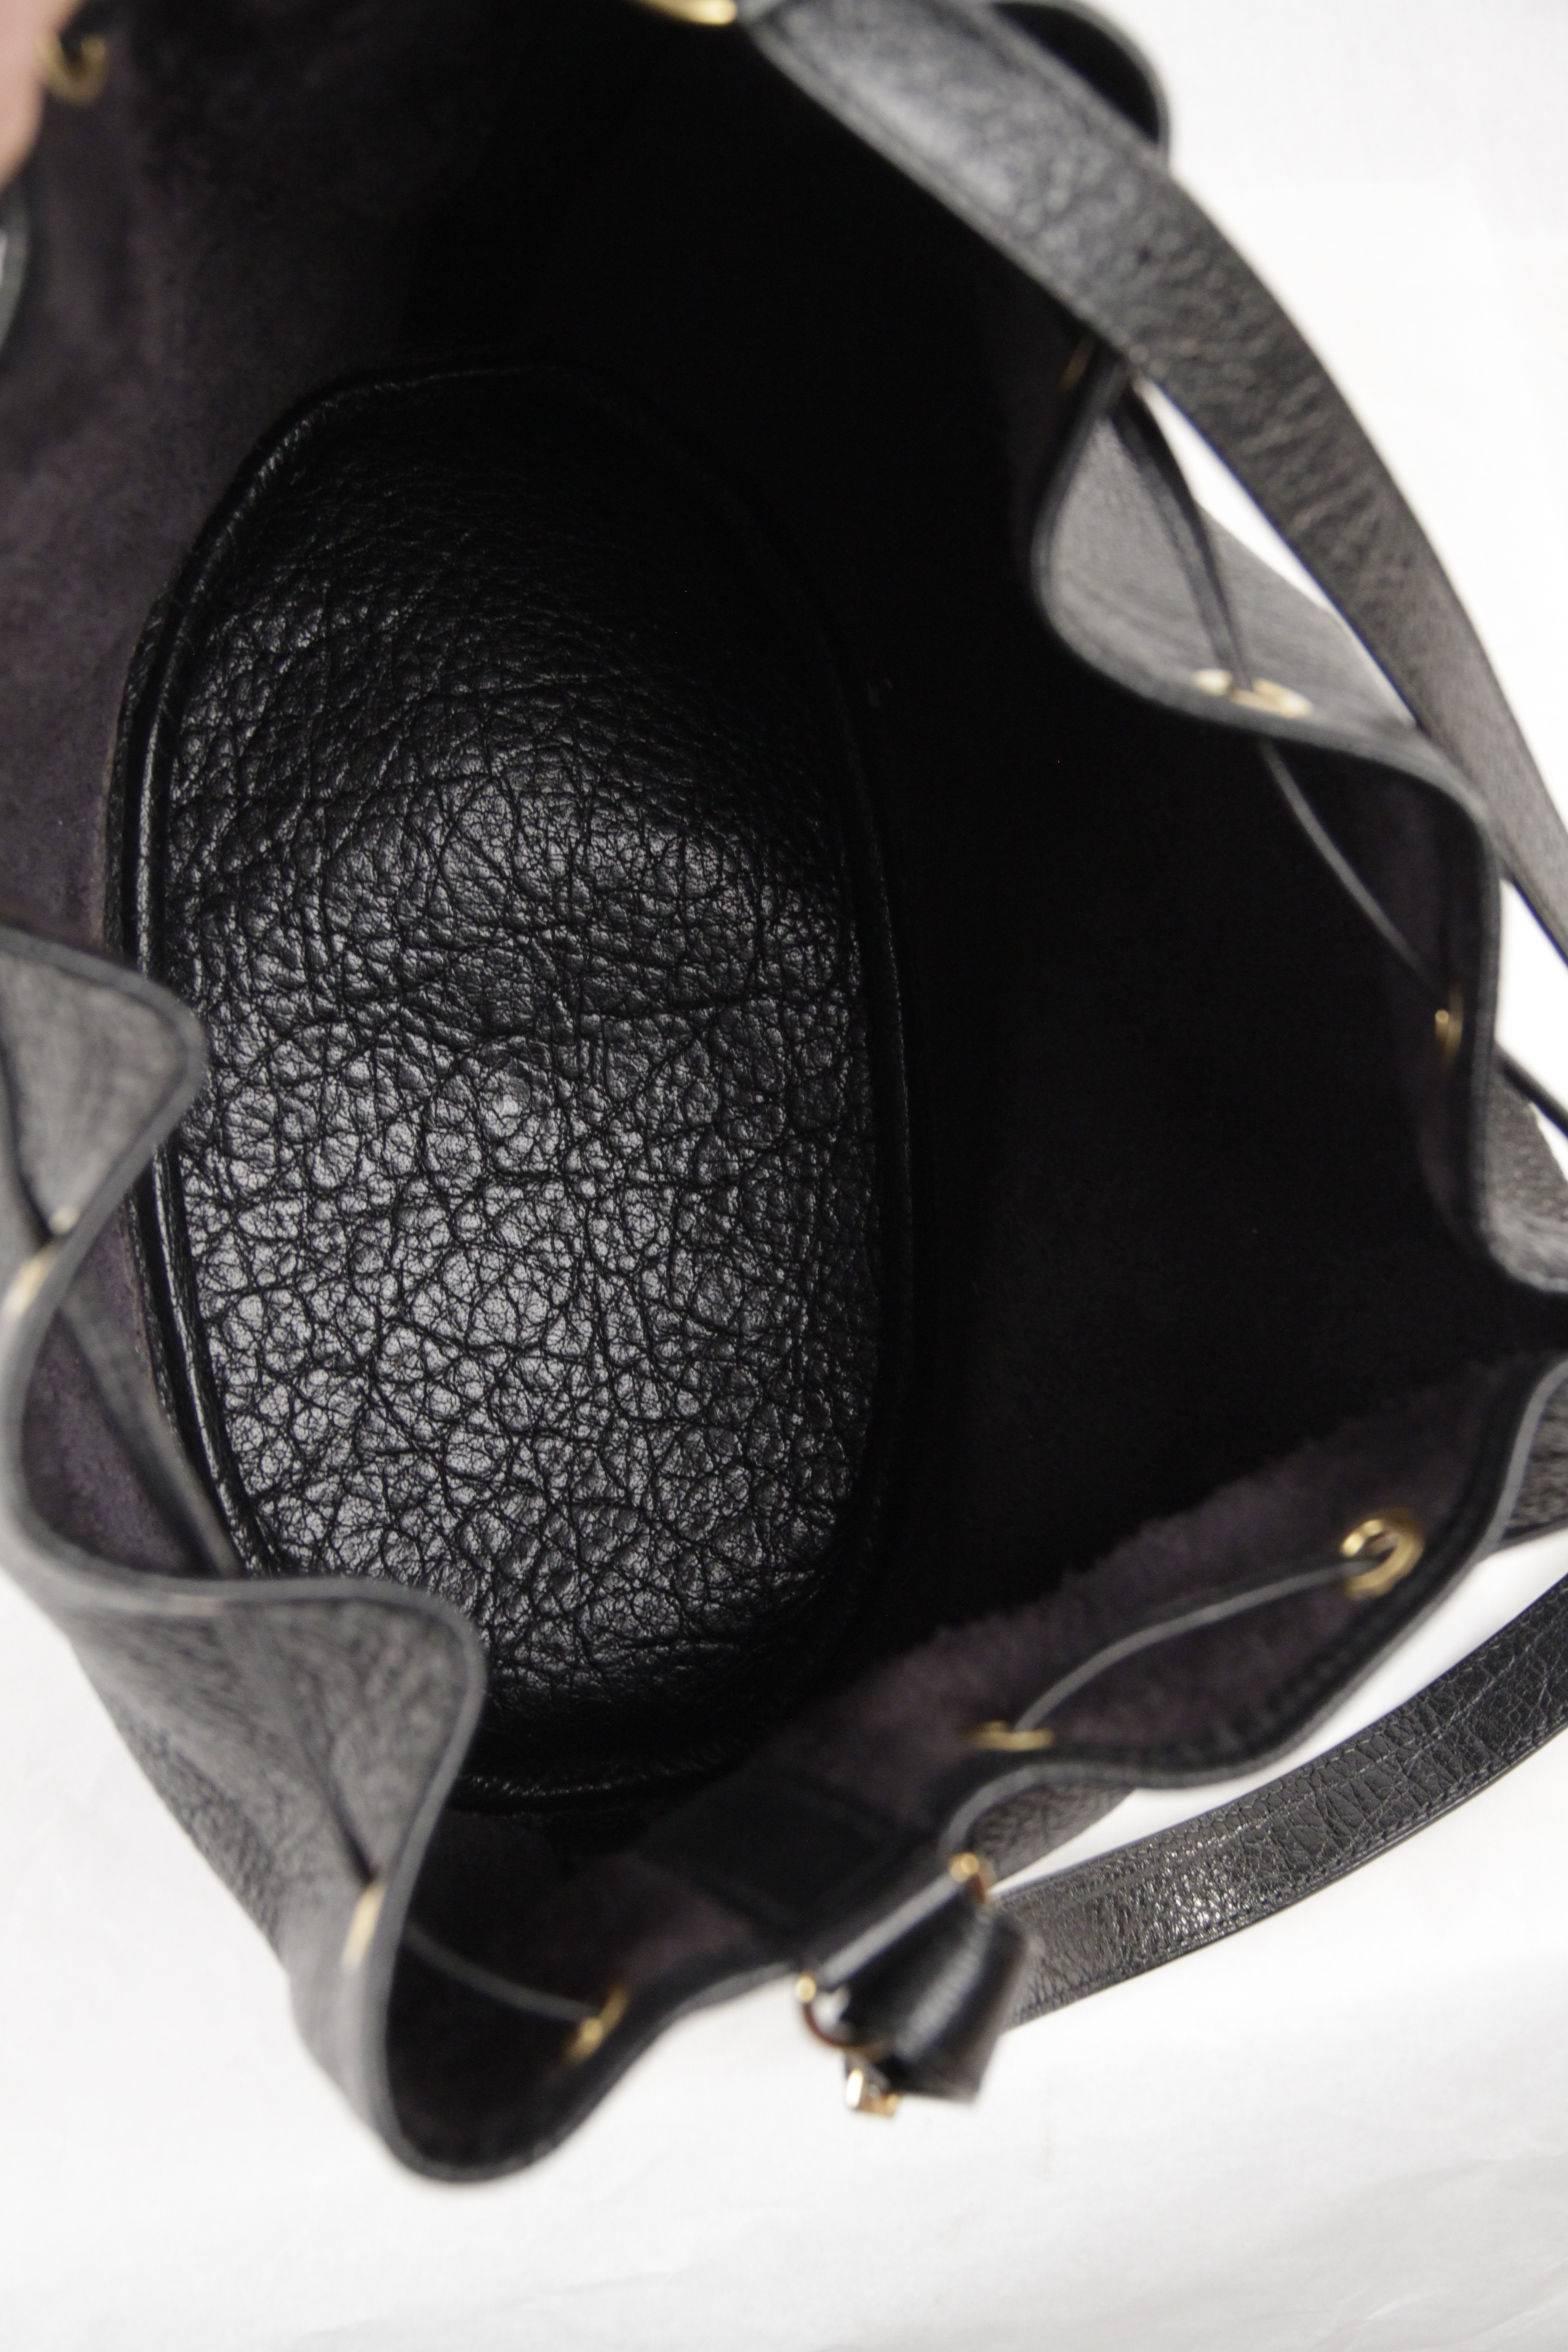 HERMES PARIS Vintage Black Leather MARKET GM Bucket SHOULDER BAG 1